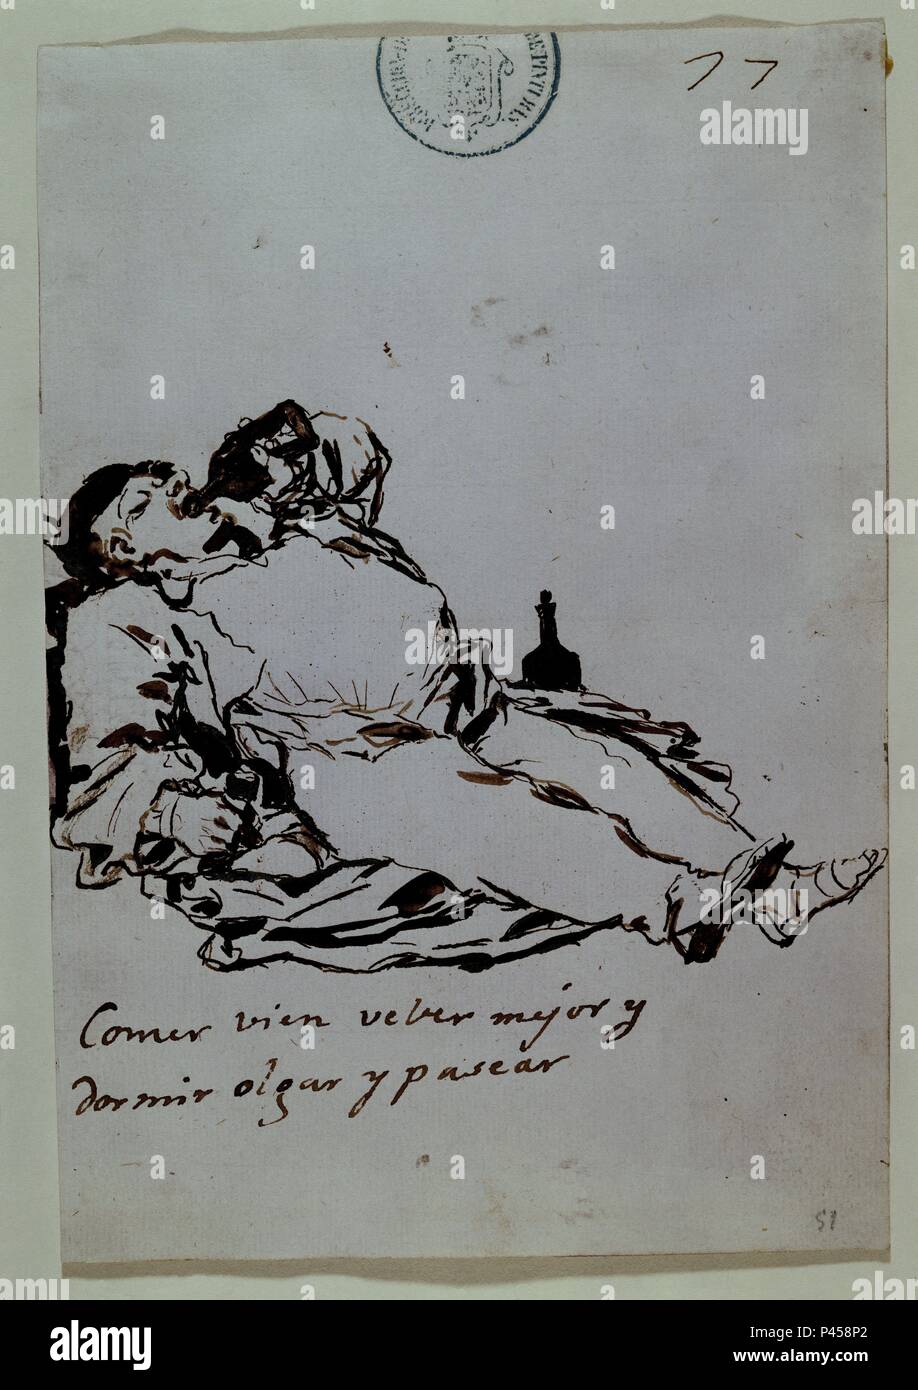 COMER BIEN BEBER MEJOR Y DORMIR OLGAR Y PASEAR - ALBUM C, 77 - SIGLO XIX - AGUADA-SEPIA - 205x142 mm. Author: Francisco de Goya (1746-1828). Location: MUSEO DEL PRADO-DIBUJOS, MADRID, SPAIN. Stock Photo